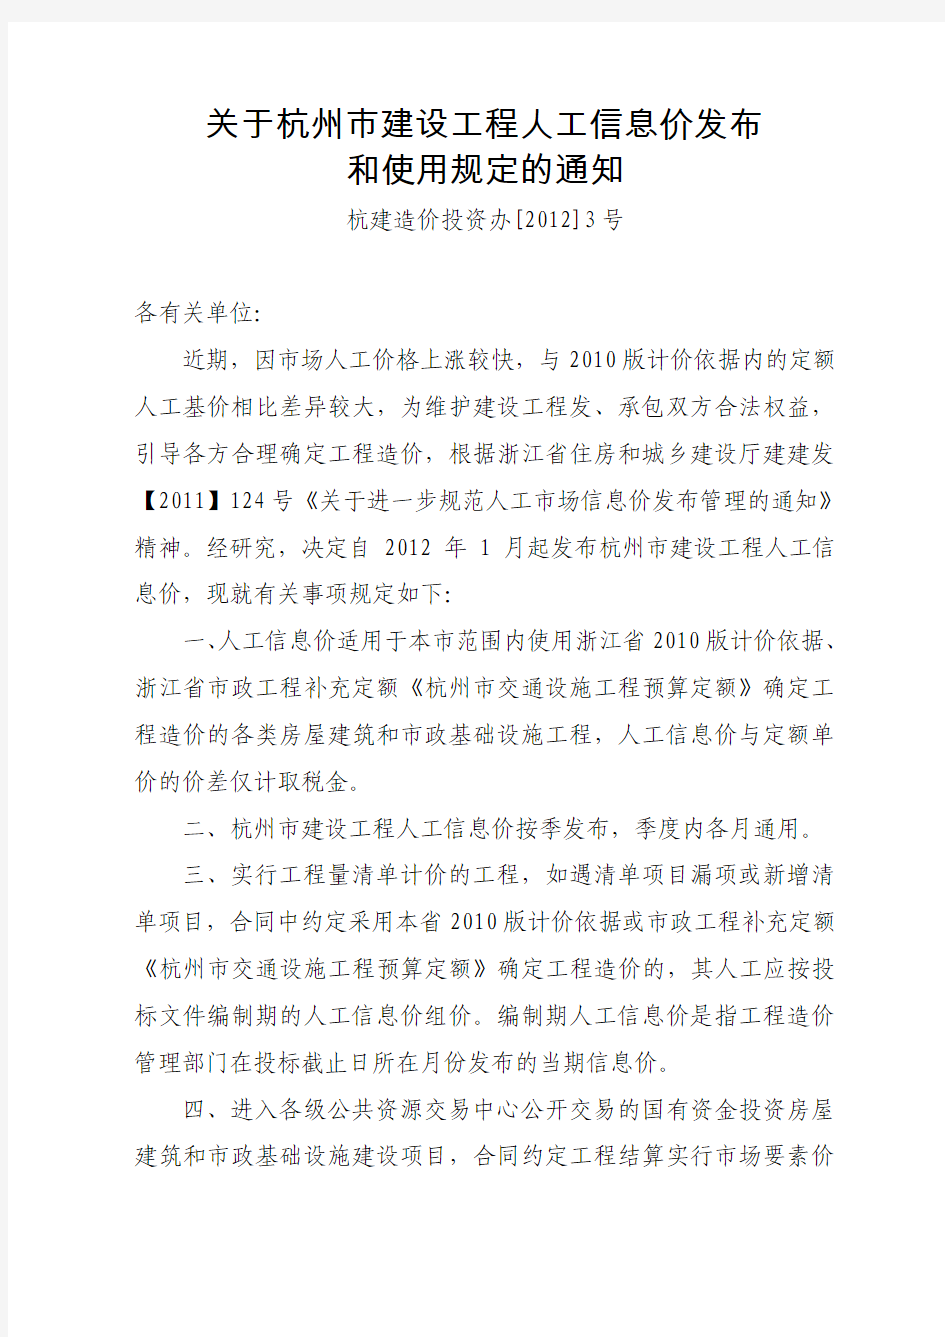 余建〔2012〕34号转发《关于杭州市建设工程人工信息发布和使用规定的通知》